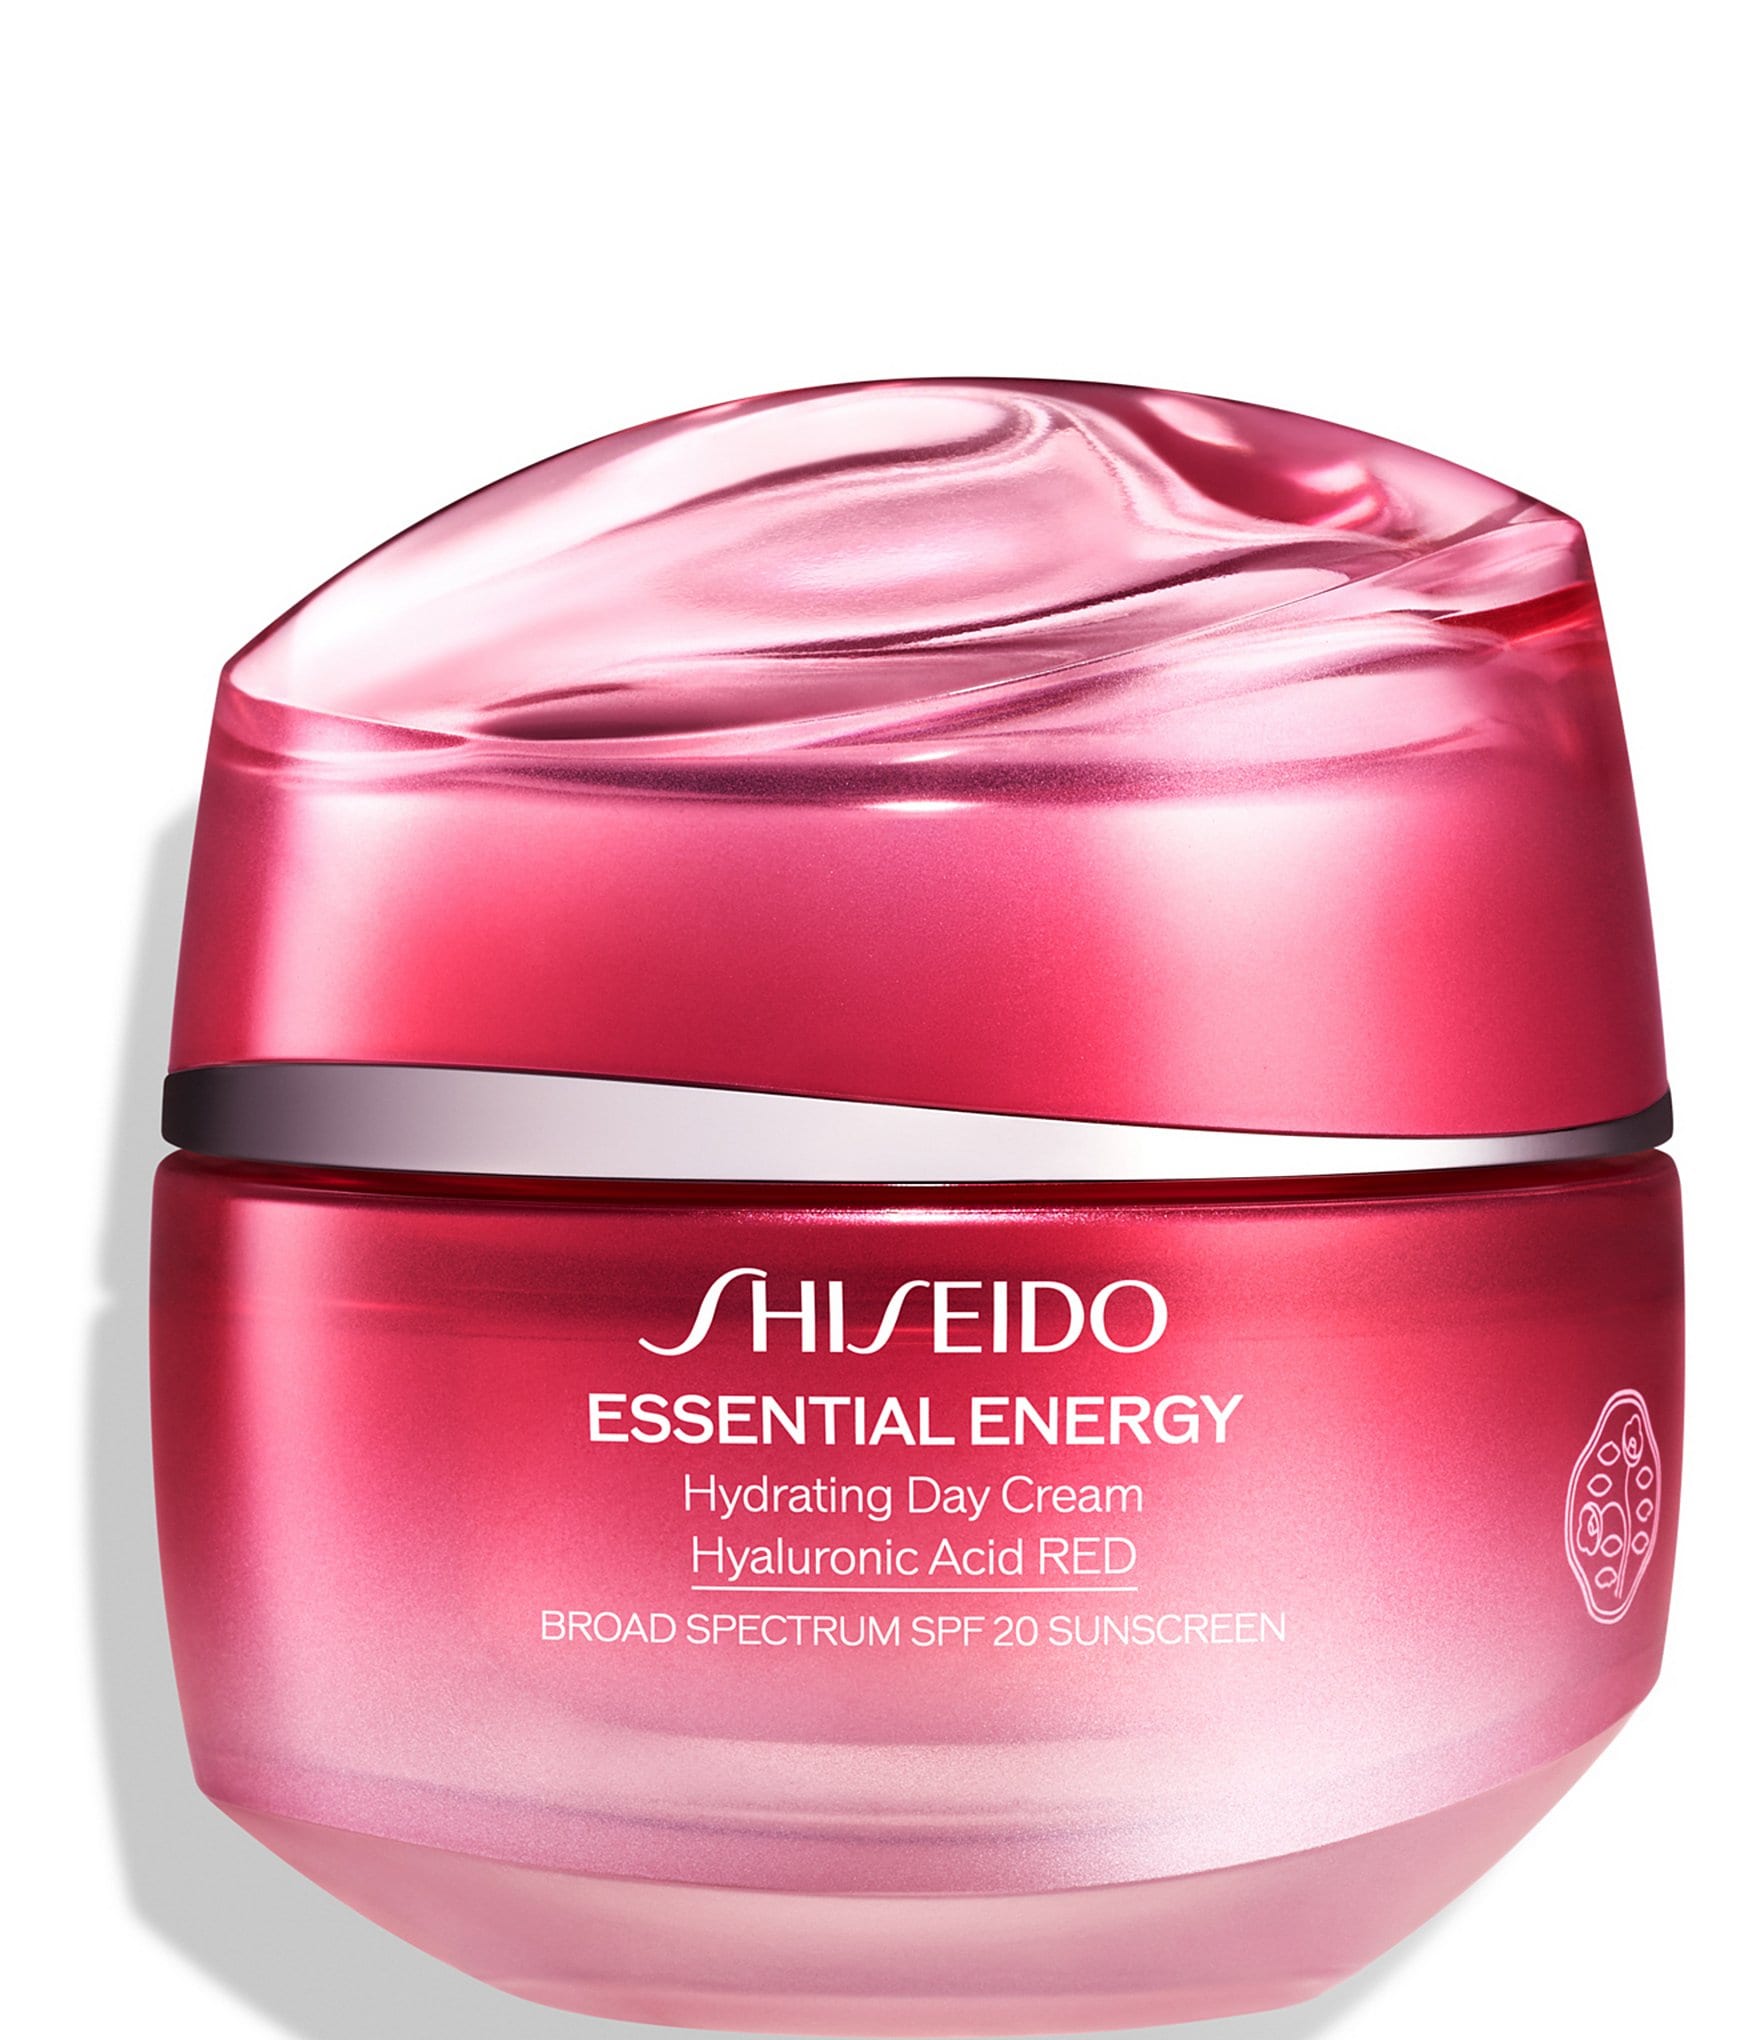 Увлажняющий крем spf 20. Шисейдо энергетический крем. Shiseido Essential Energy набор. Shiseido spf20 крем для лица. Крем Shiseido Moisturizer легкий.